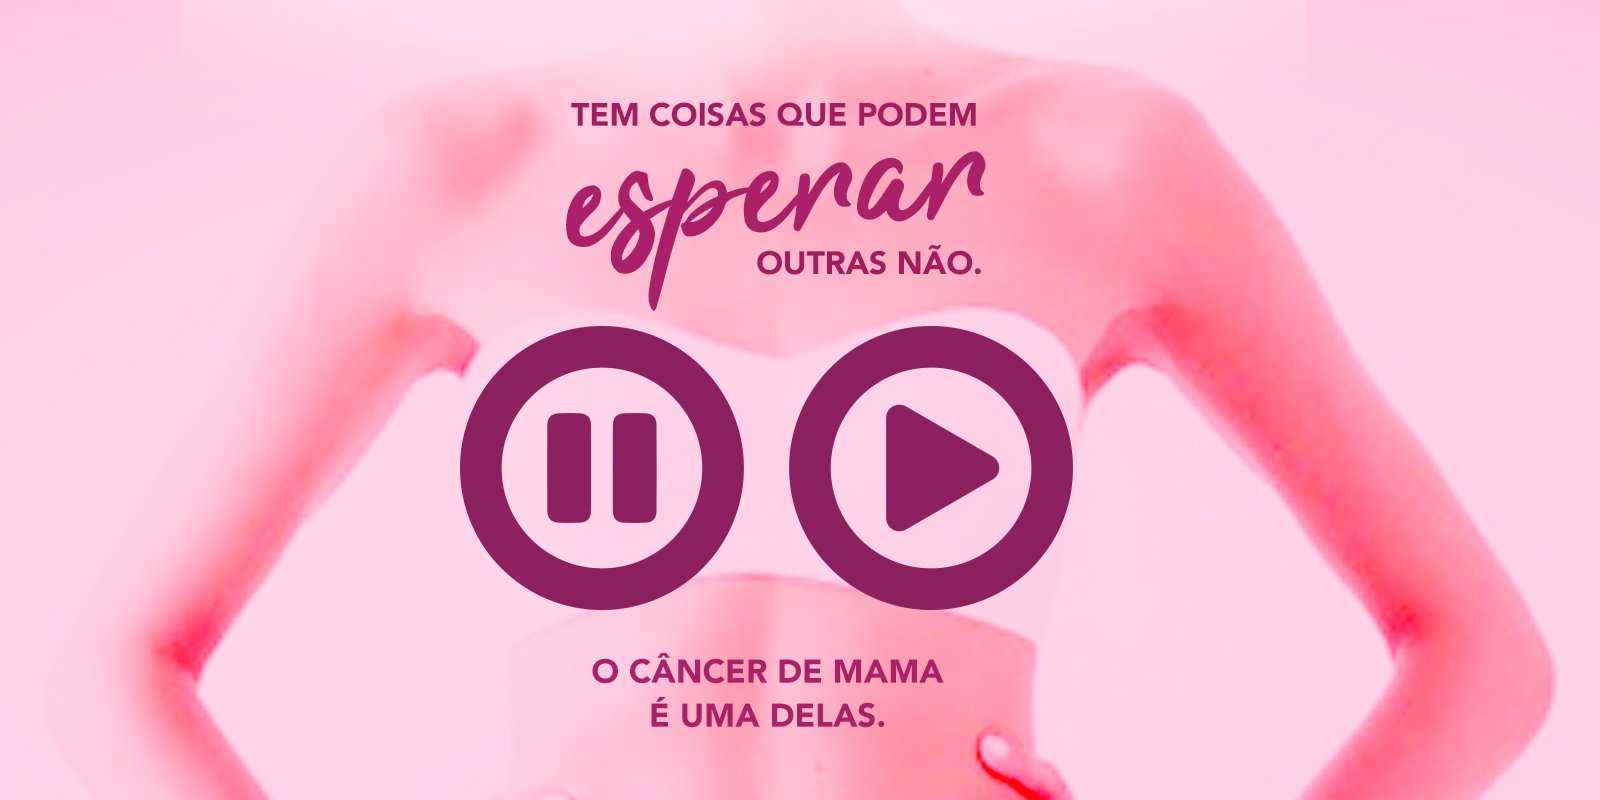 Featured image for “O câncer não pode esperar”